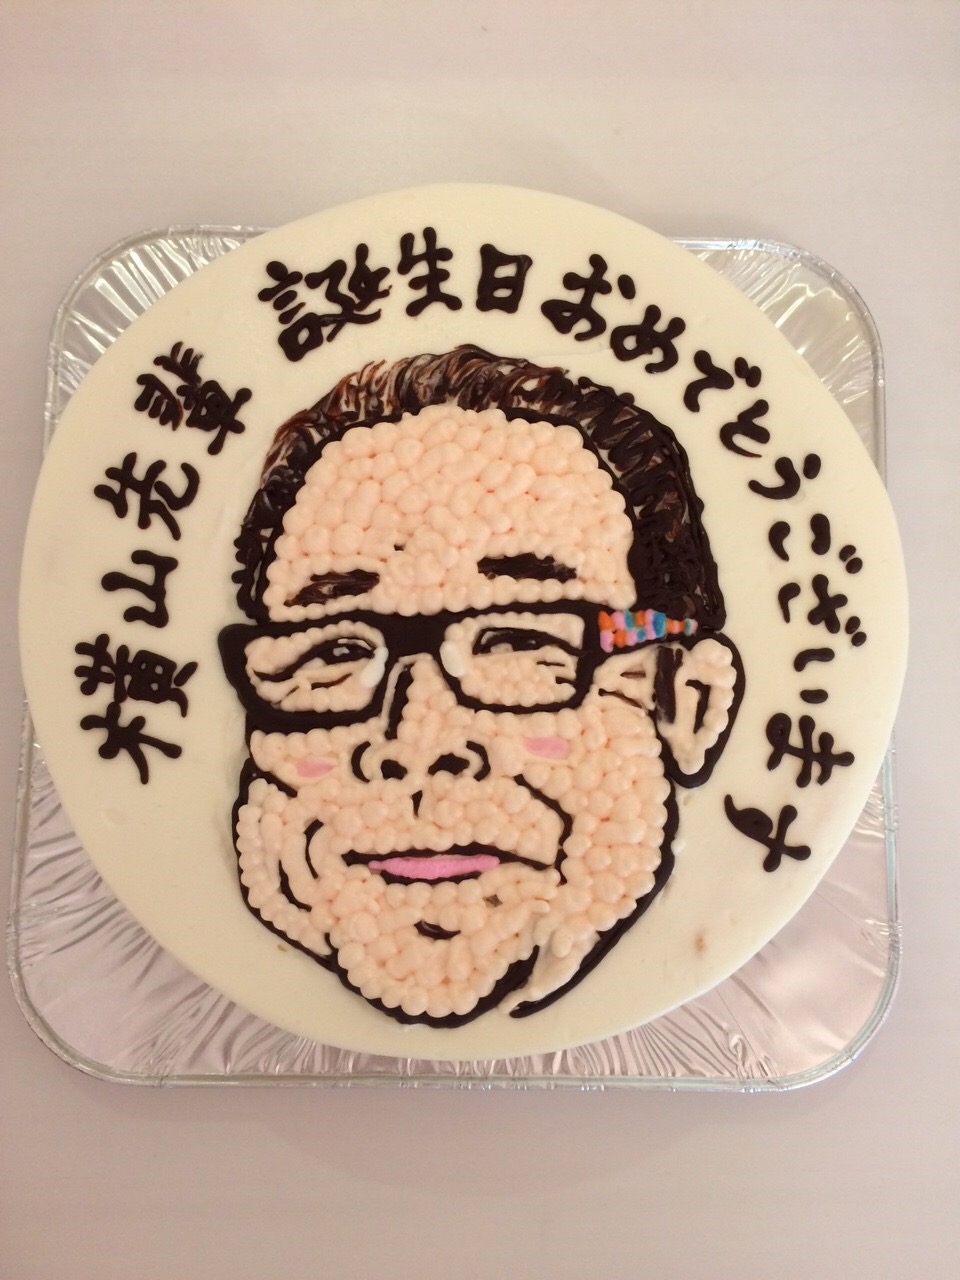 名古屋の似顔絵イラスト入りバースデーケーキ